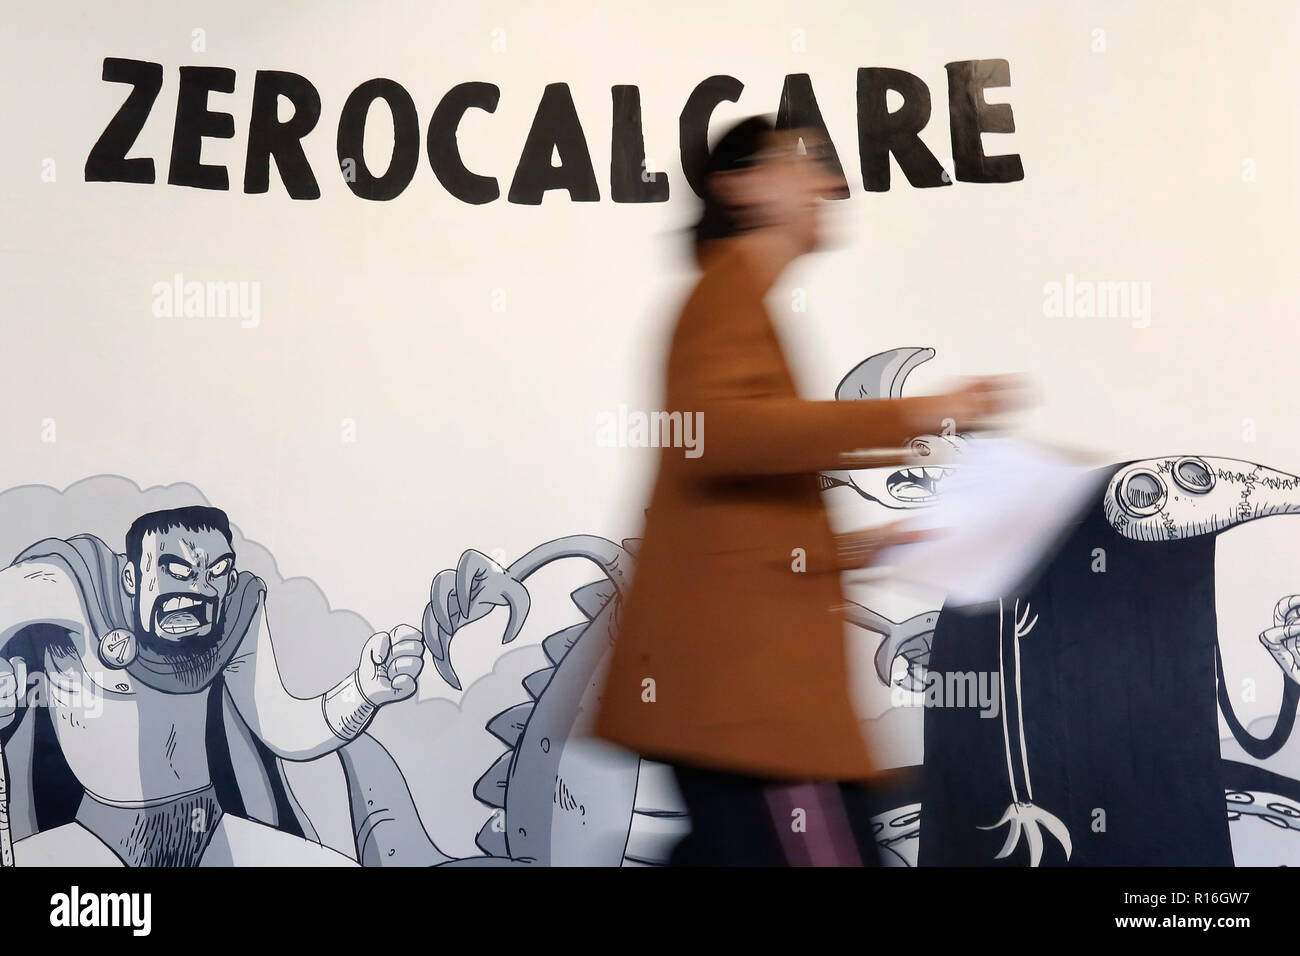 Roma, 9 novembre 2018. Mostra del fumettista italiano Zerocalcare, aka Michele Rech, uno dei più famosi in Italia, intitolato 'Digging fossati - alimentazione coccodrilli". Foto di Samantha Zucchi Insidefoto Foto Stock